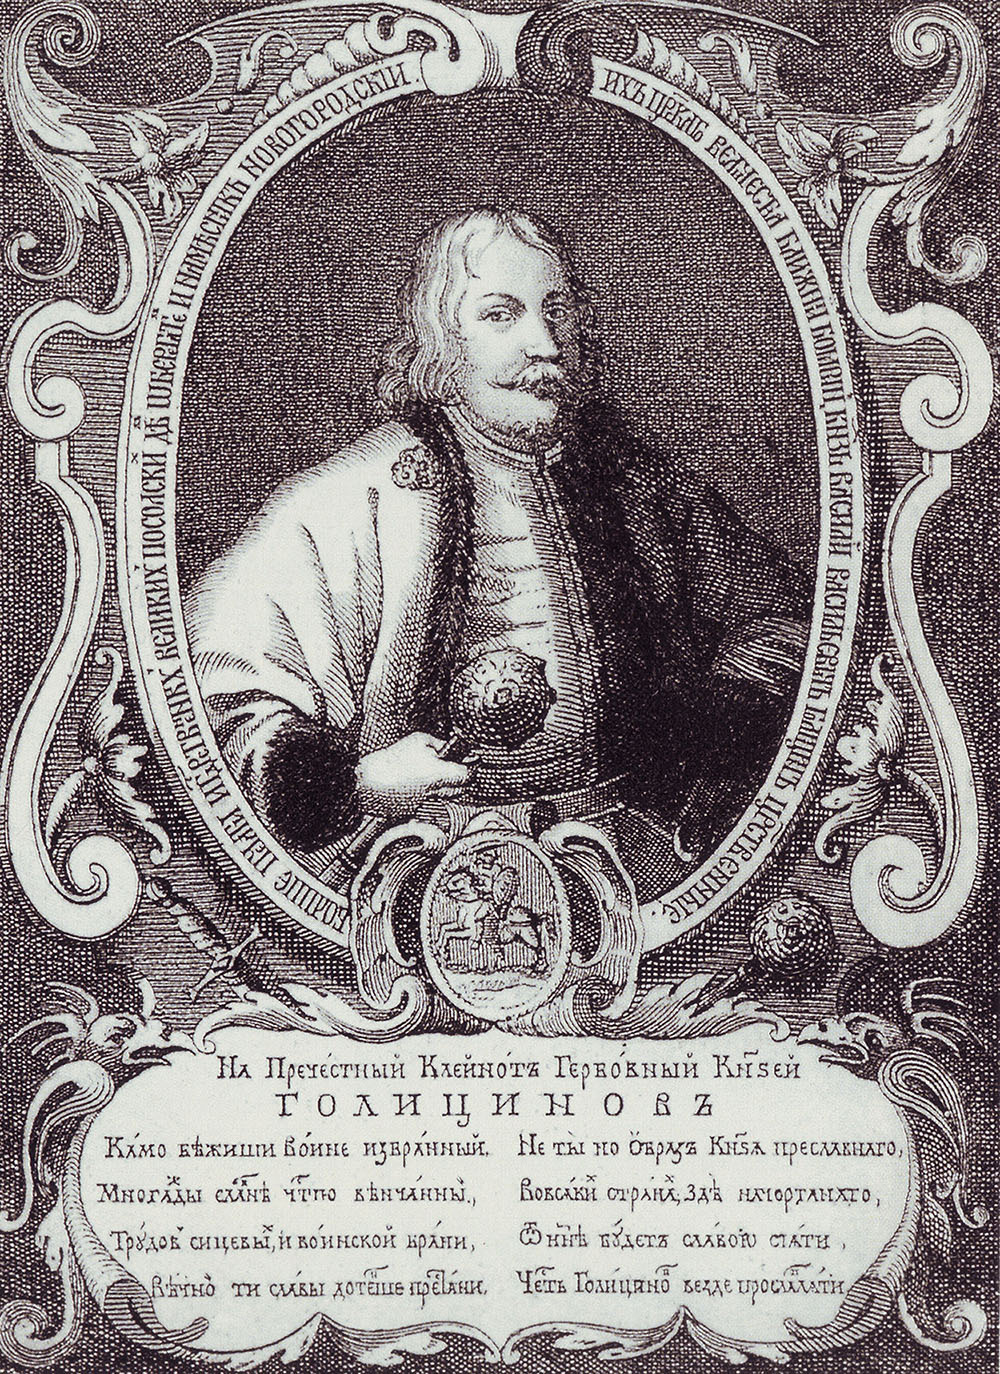 Гравированный портрет работы А. Тарасевича. "В. В. Голицын". 1689.